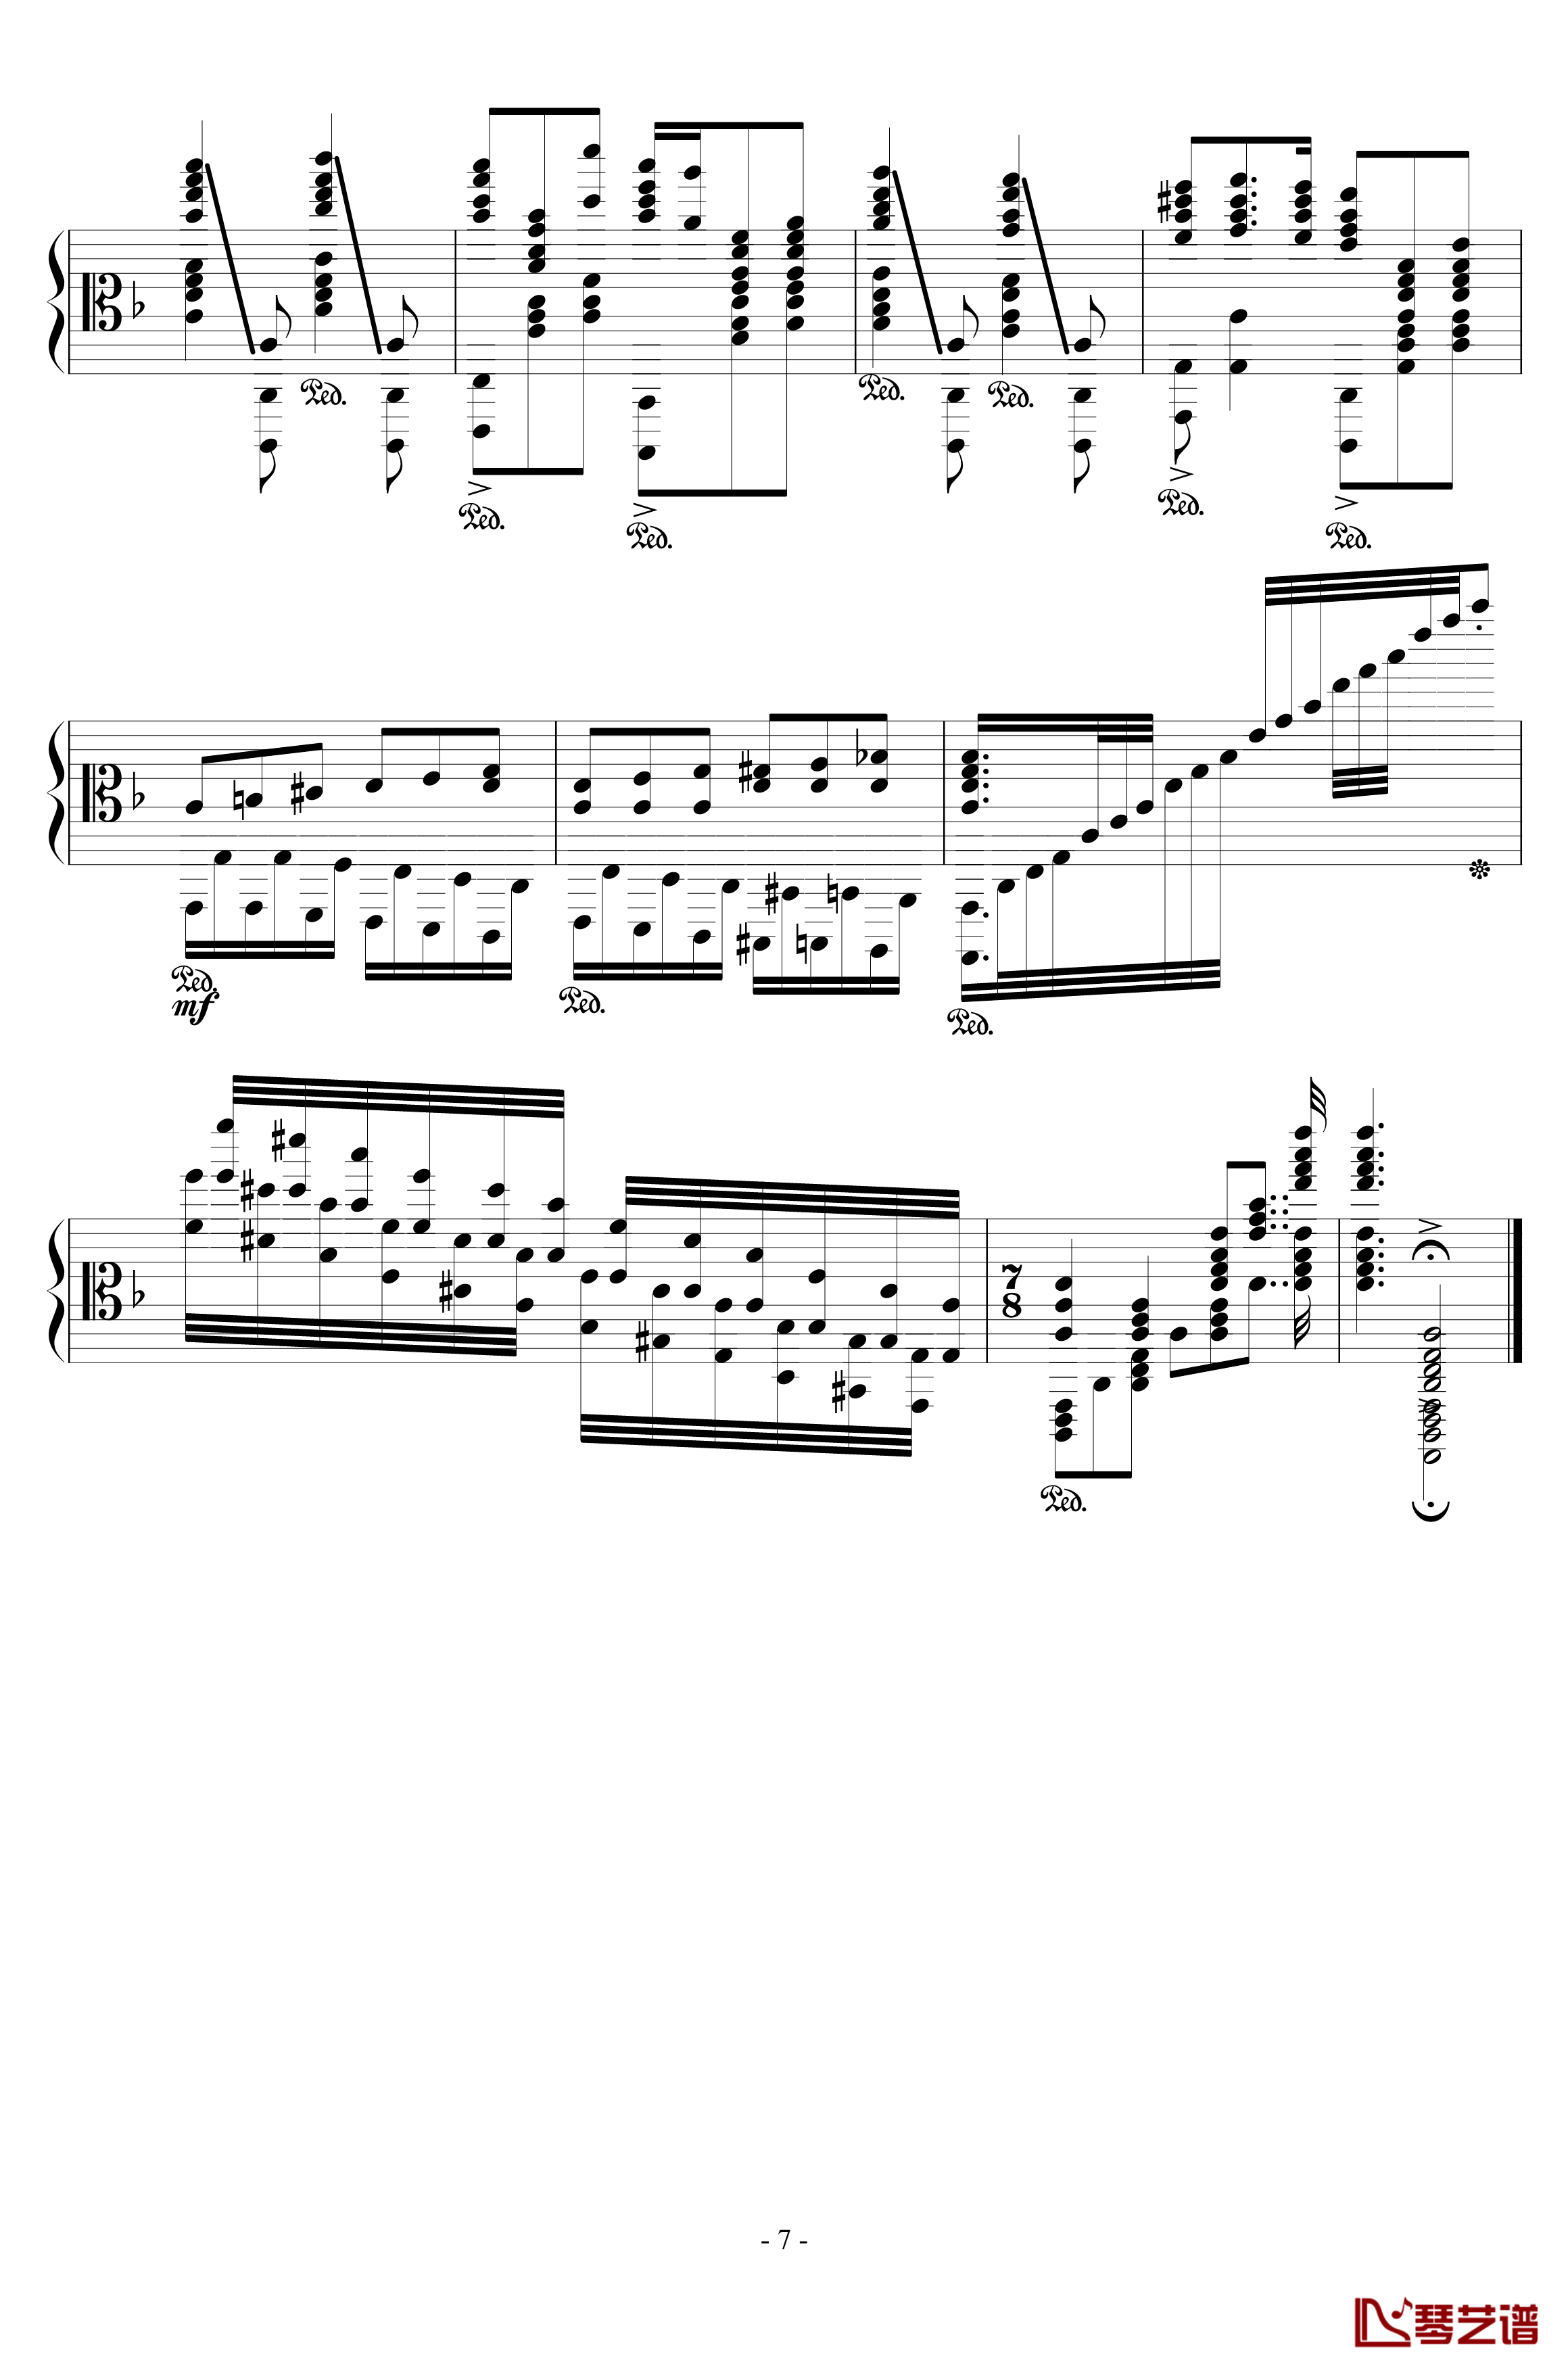 加勒比海盗钢琴谱-混合版-Hans Zimmer